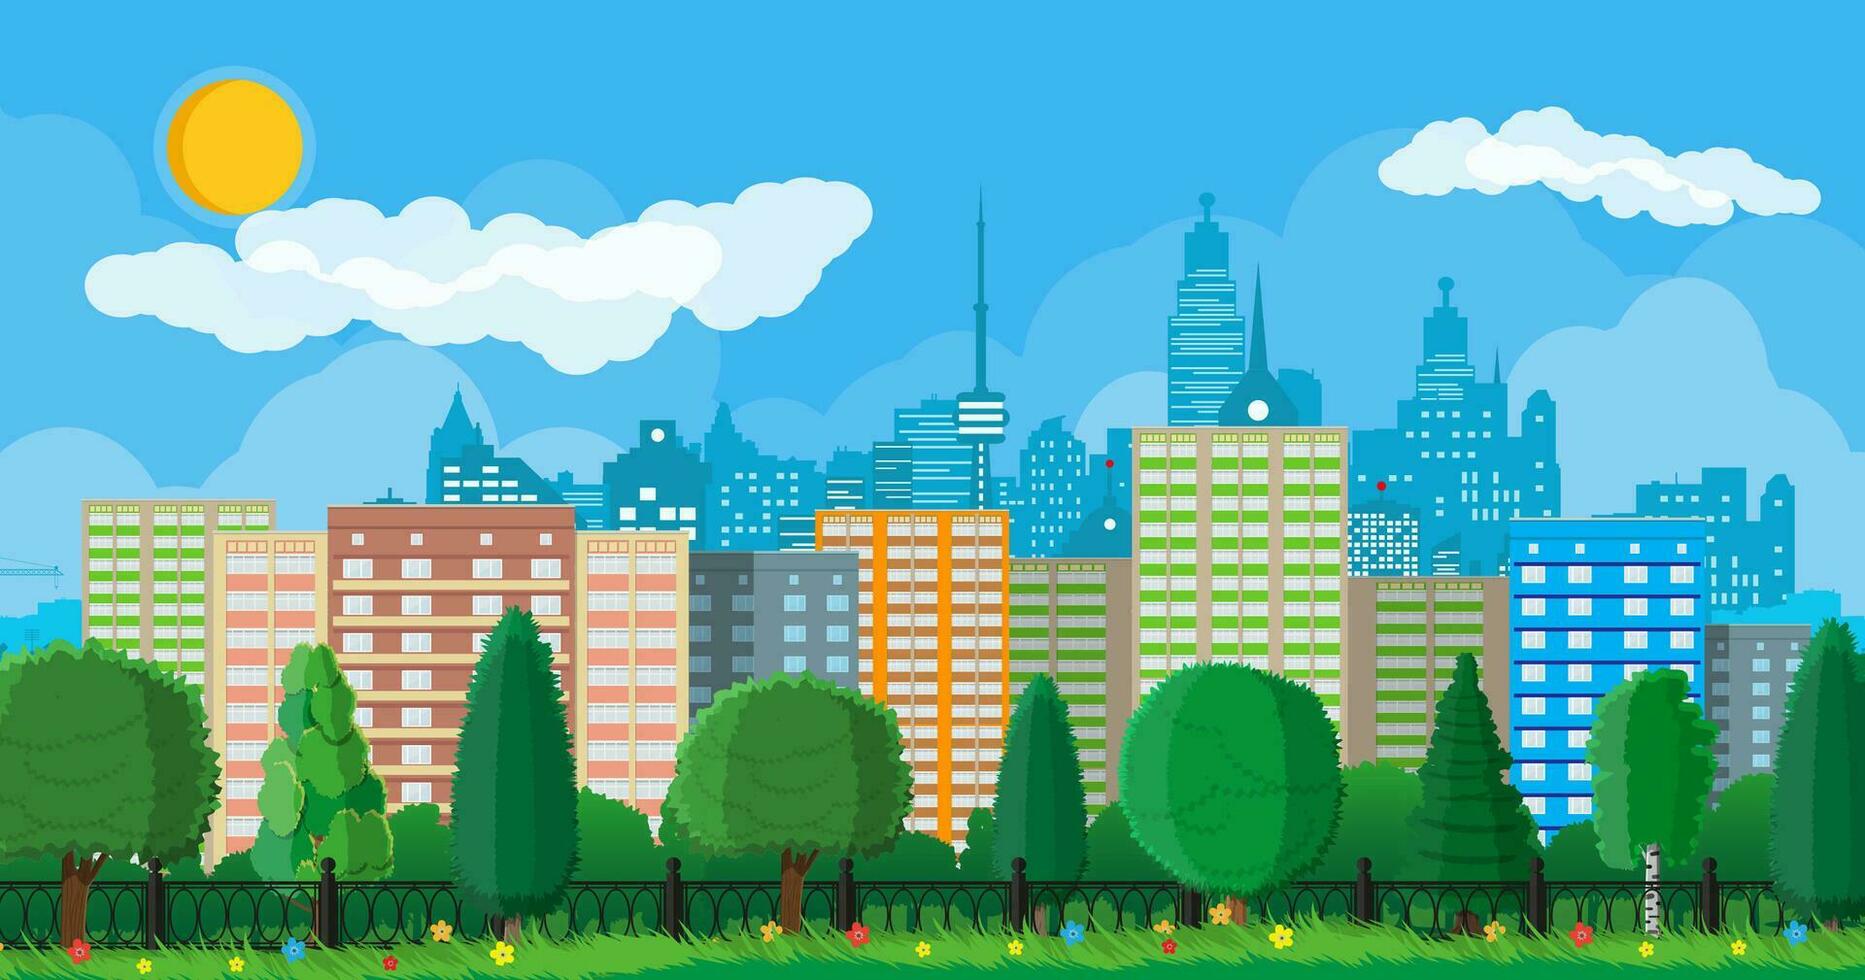 stad park concept. stedelijk Woud panorama met schutting. stadsgezicht met gebouwen en bomen. lucht met wolken en zon. vrije tijd tijd in zomer stad park. vector illustratie in vlak stijl